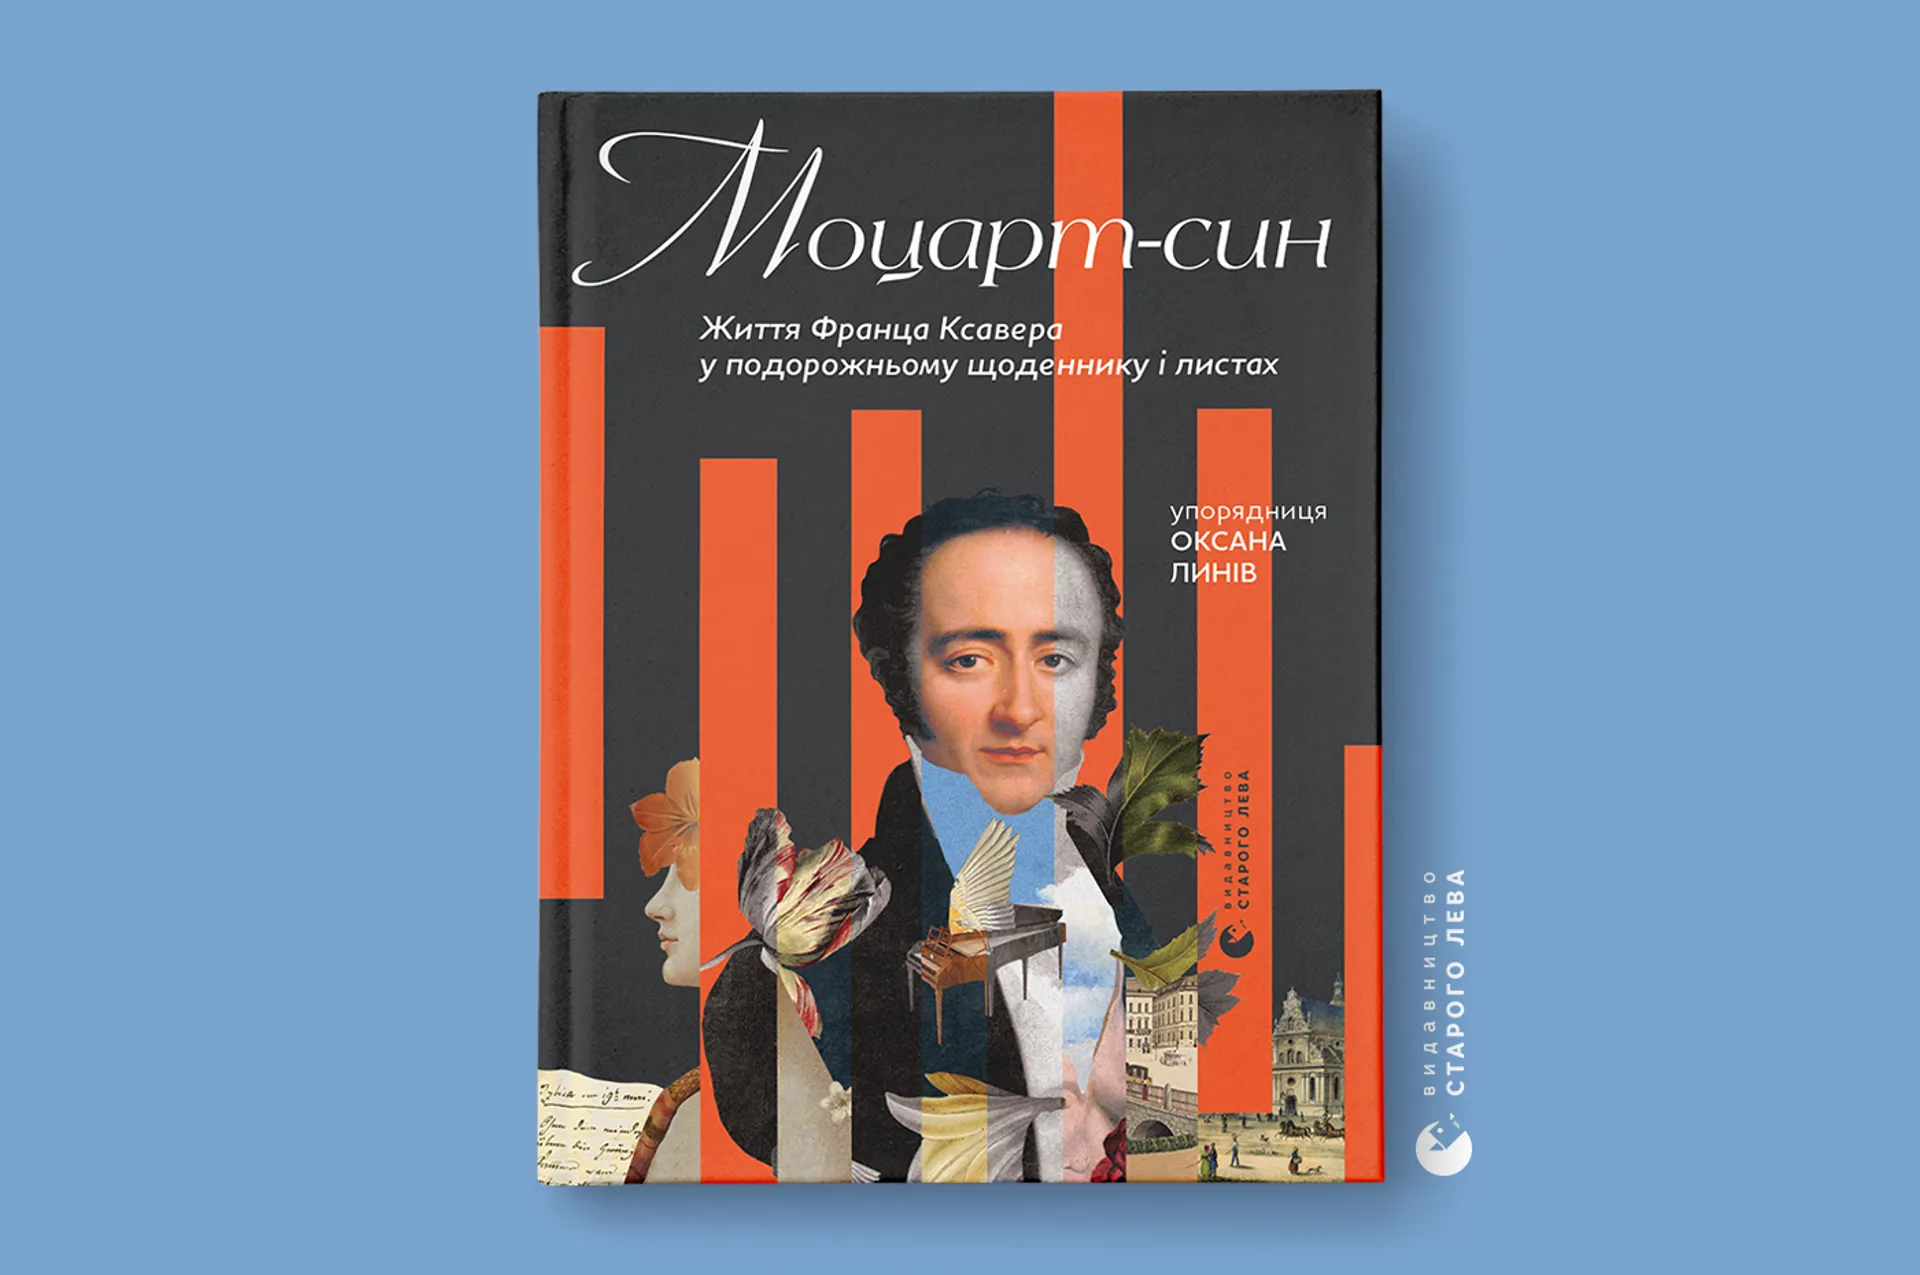 Виходить друком унікальне видання «Моцарт-син. Життя Франца Ксавера у подорожньому щоденнику і листах»